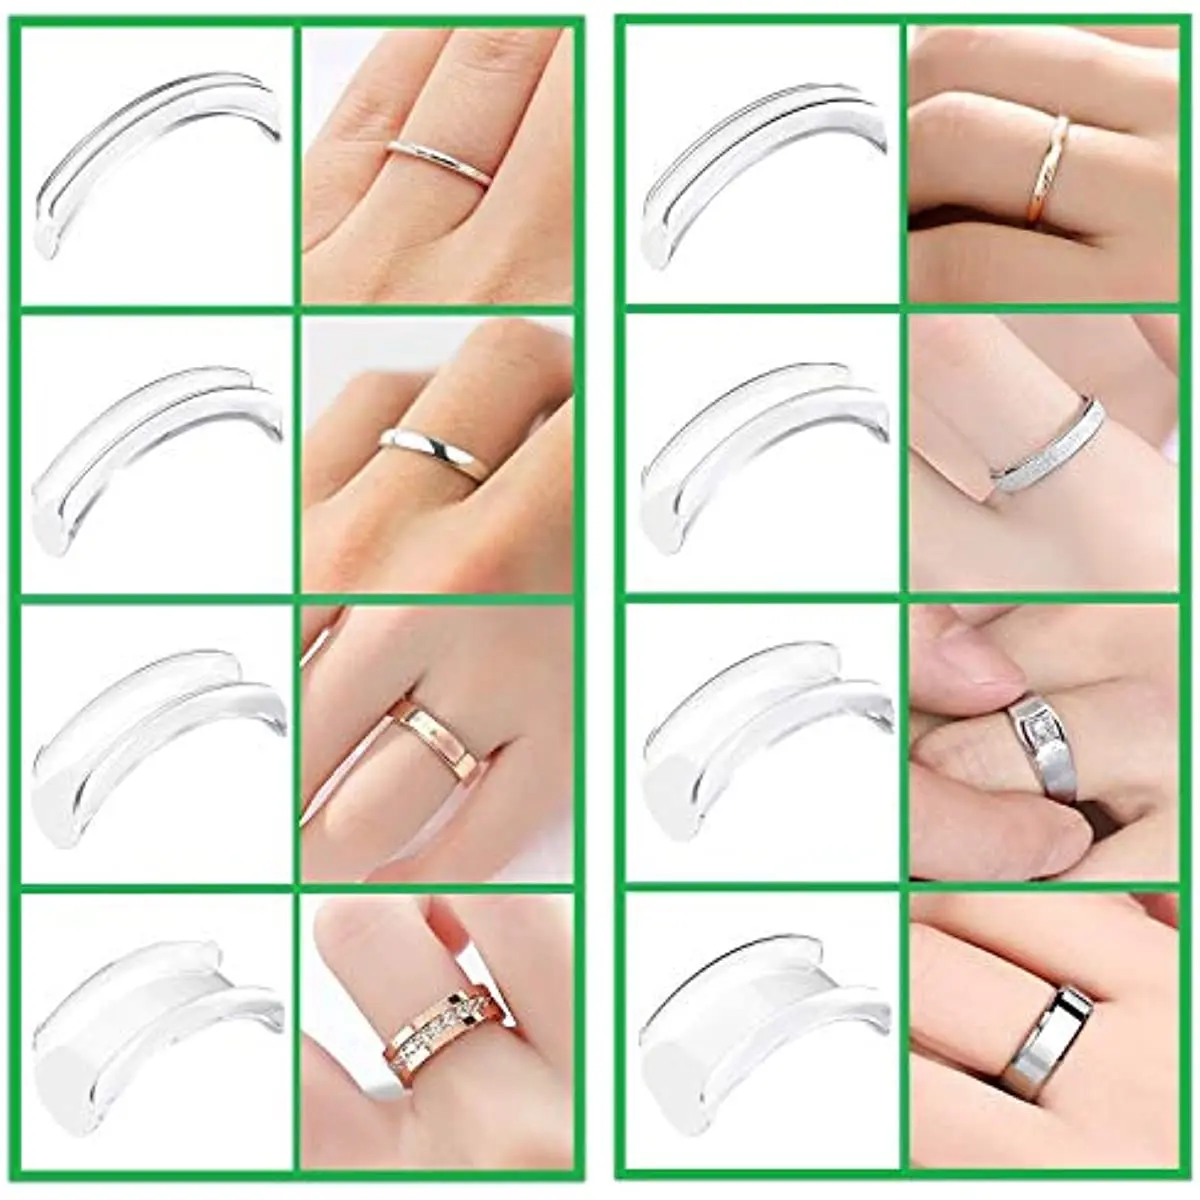 Ajustador de tamaño de anillo para anillos sueltos, para cualquier anillo, espaciador de reductor de tamaño, protector de anillo